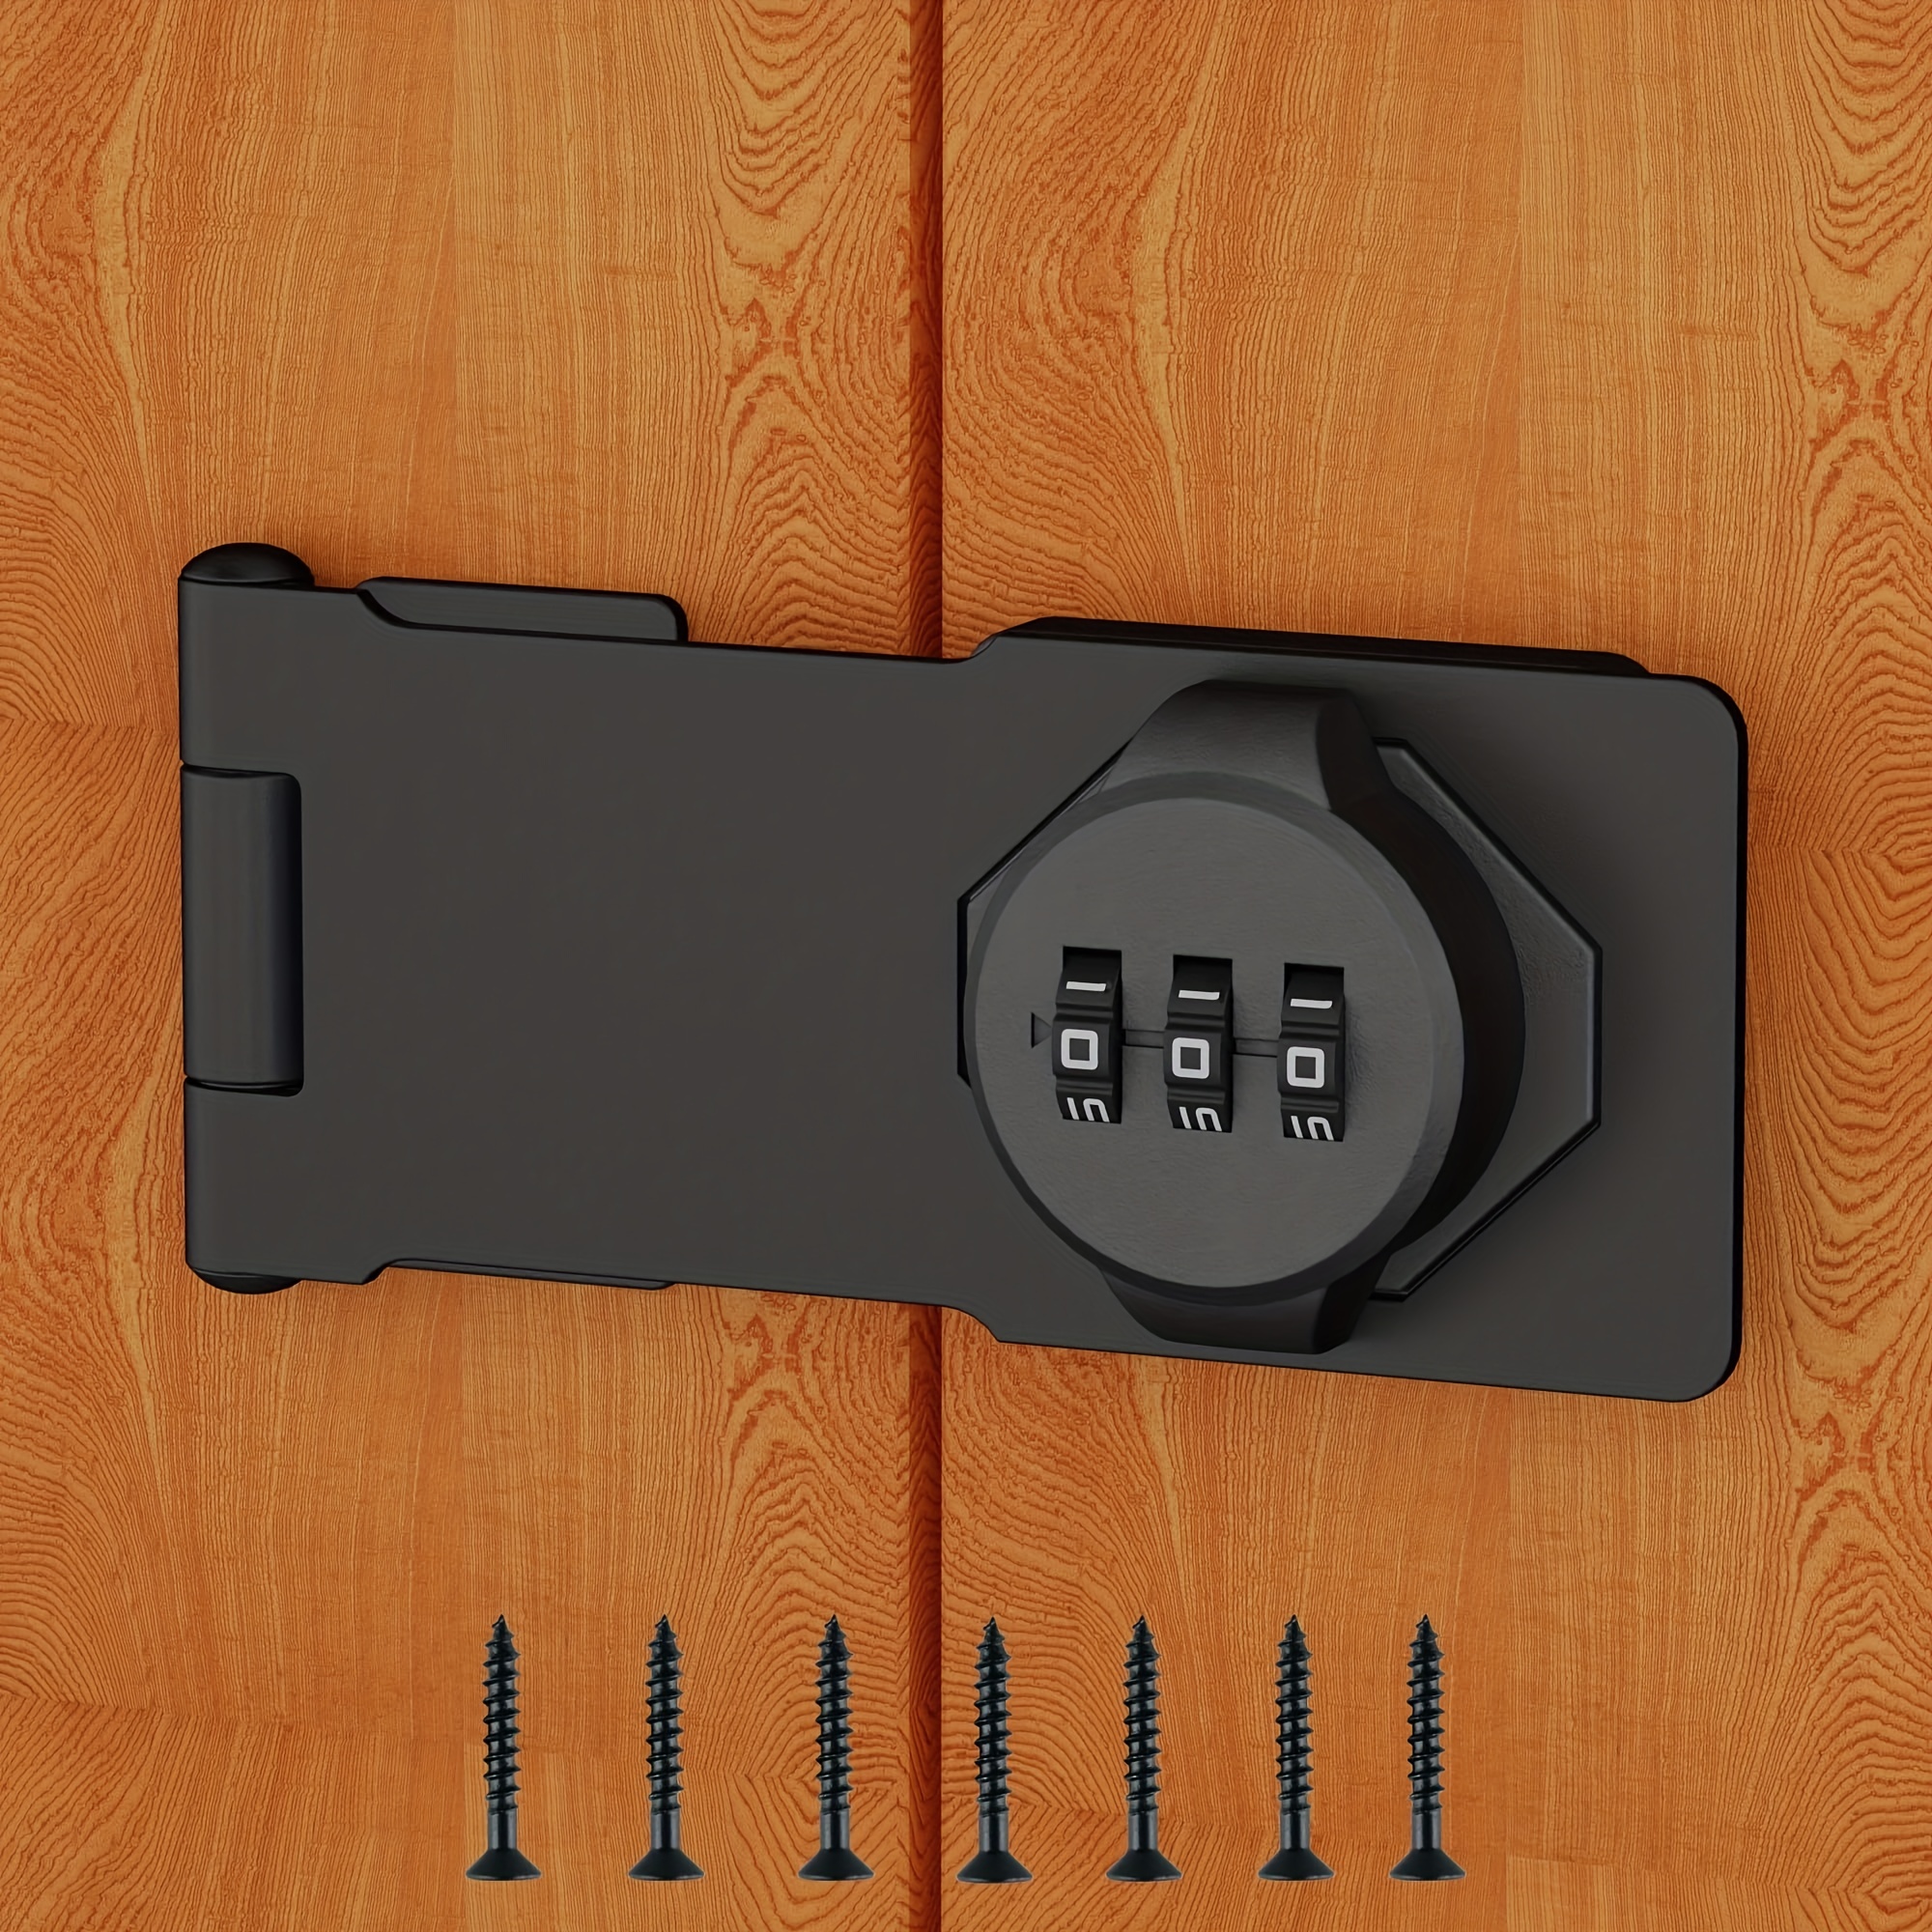 Combination Cabinet Locks with Code, Household Cabinet Password Hasp Locks  Combination Lock for Cabinet Doors, Shed Outdoor, Barn Door, Bathroom